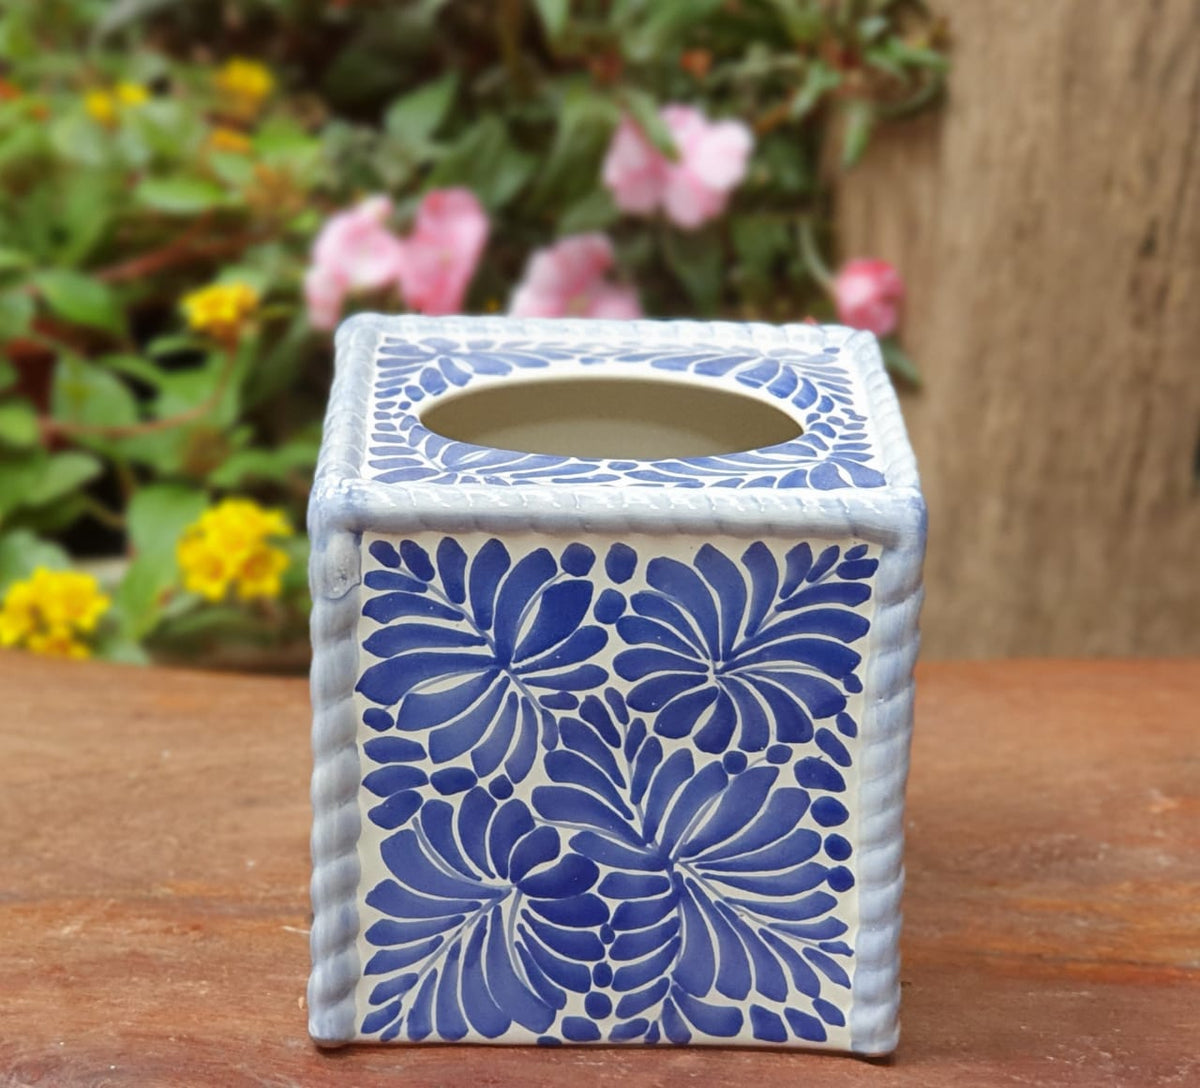 Kiva Store  Handcrafted Talavera Hacienda Ceramic Tissue Box Cover -  Classic Convenience